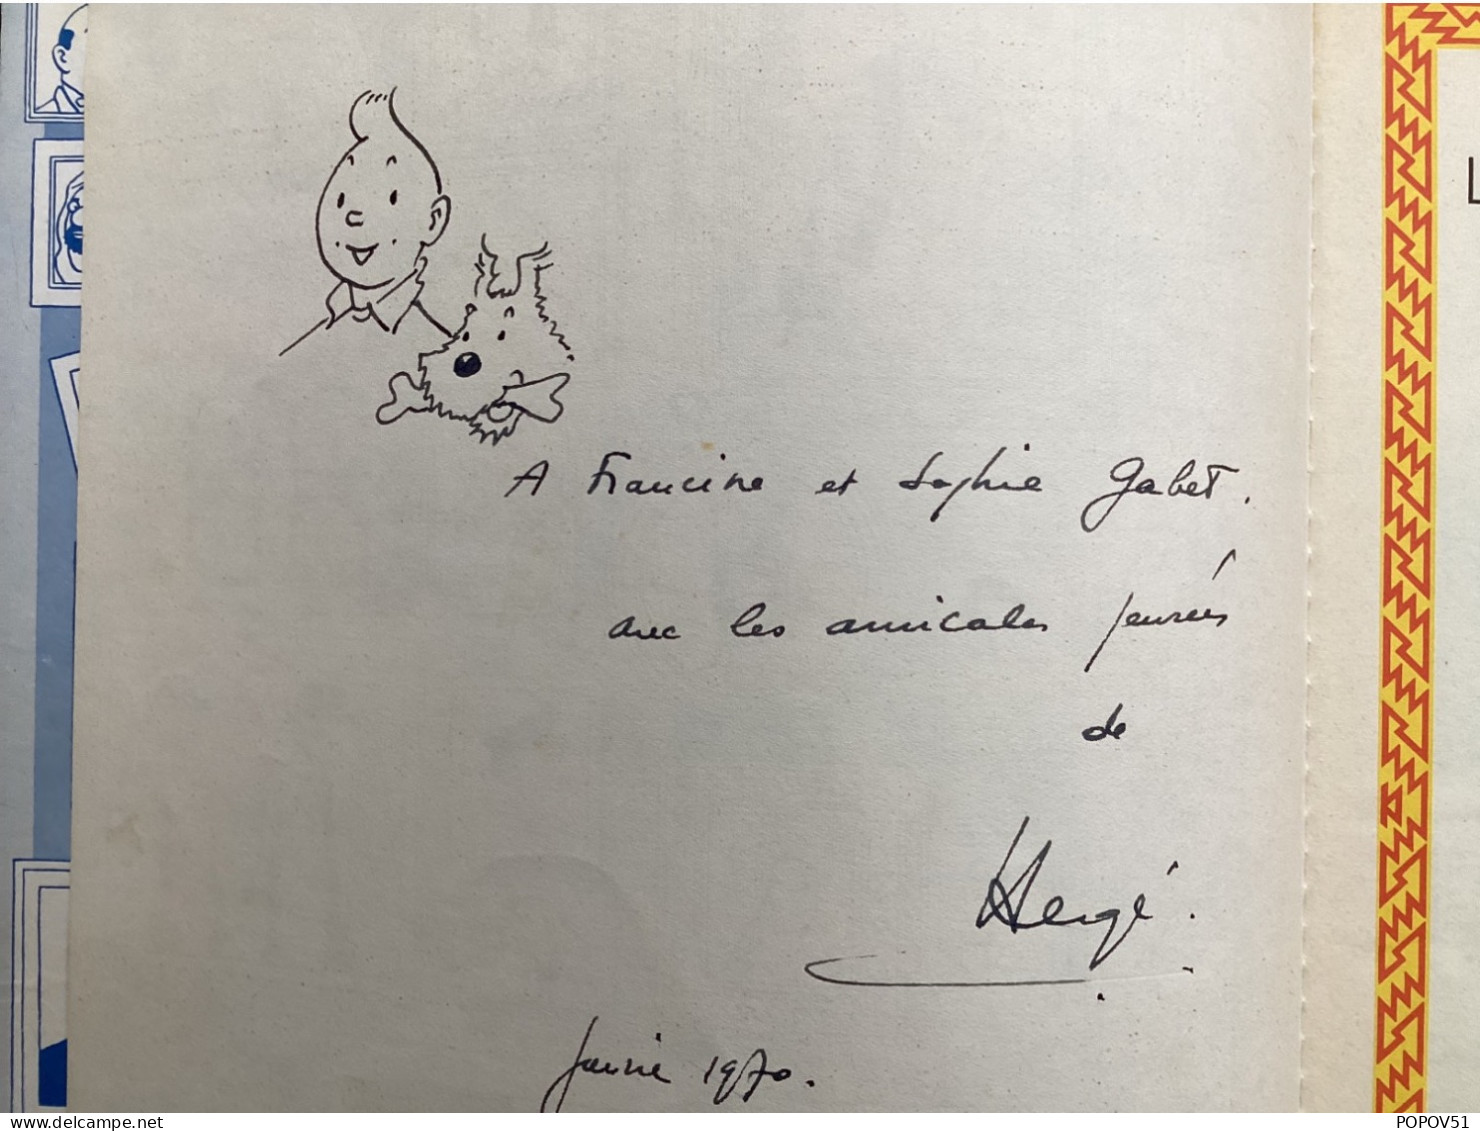 Hergé Dedicace Dans Album Le Temple Du Soleil - Libros Autografiados